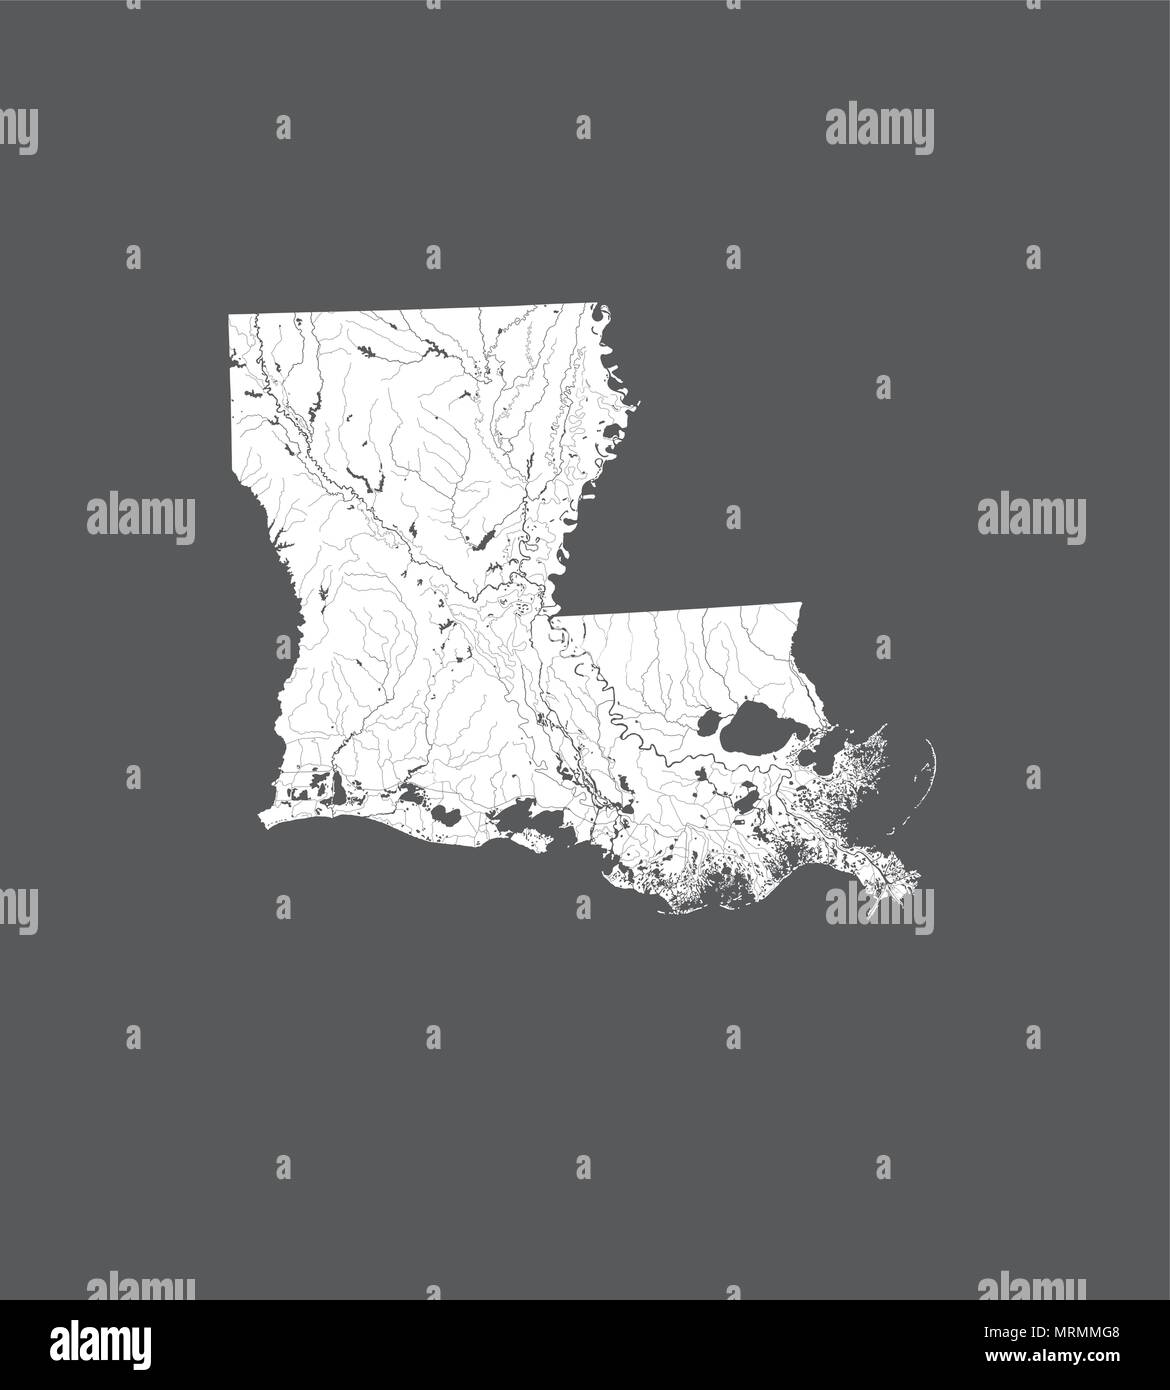 Estados Unidos - mapa de Louisiana. Hecho a mano. Los ríos y lagos son mostradas. Por favor mire mis otras imágenes de la serie cartográfica - todos ellos son muy precisos Ilustración del Vector